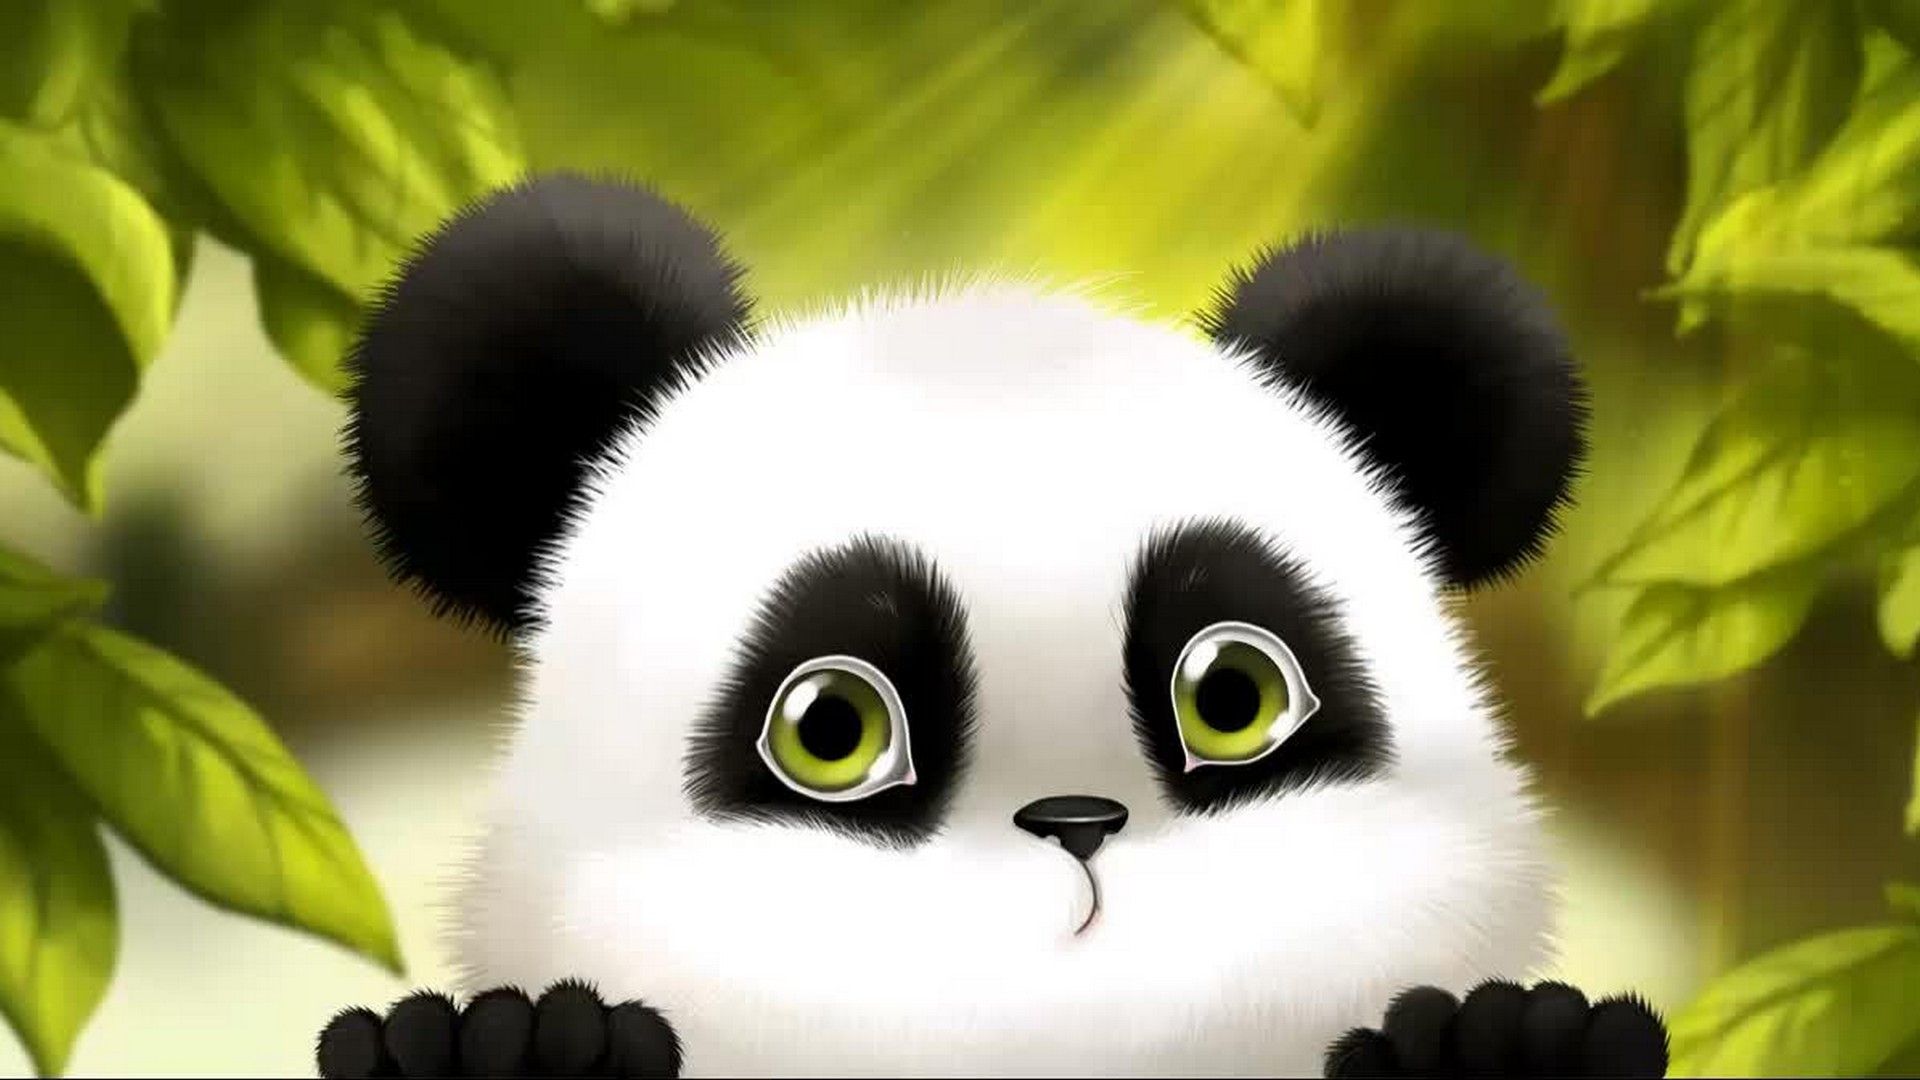 Baby Panda Wallpaper Love Panda Cartoon